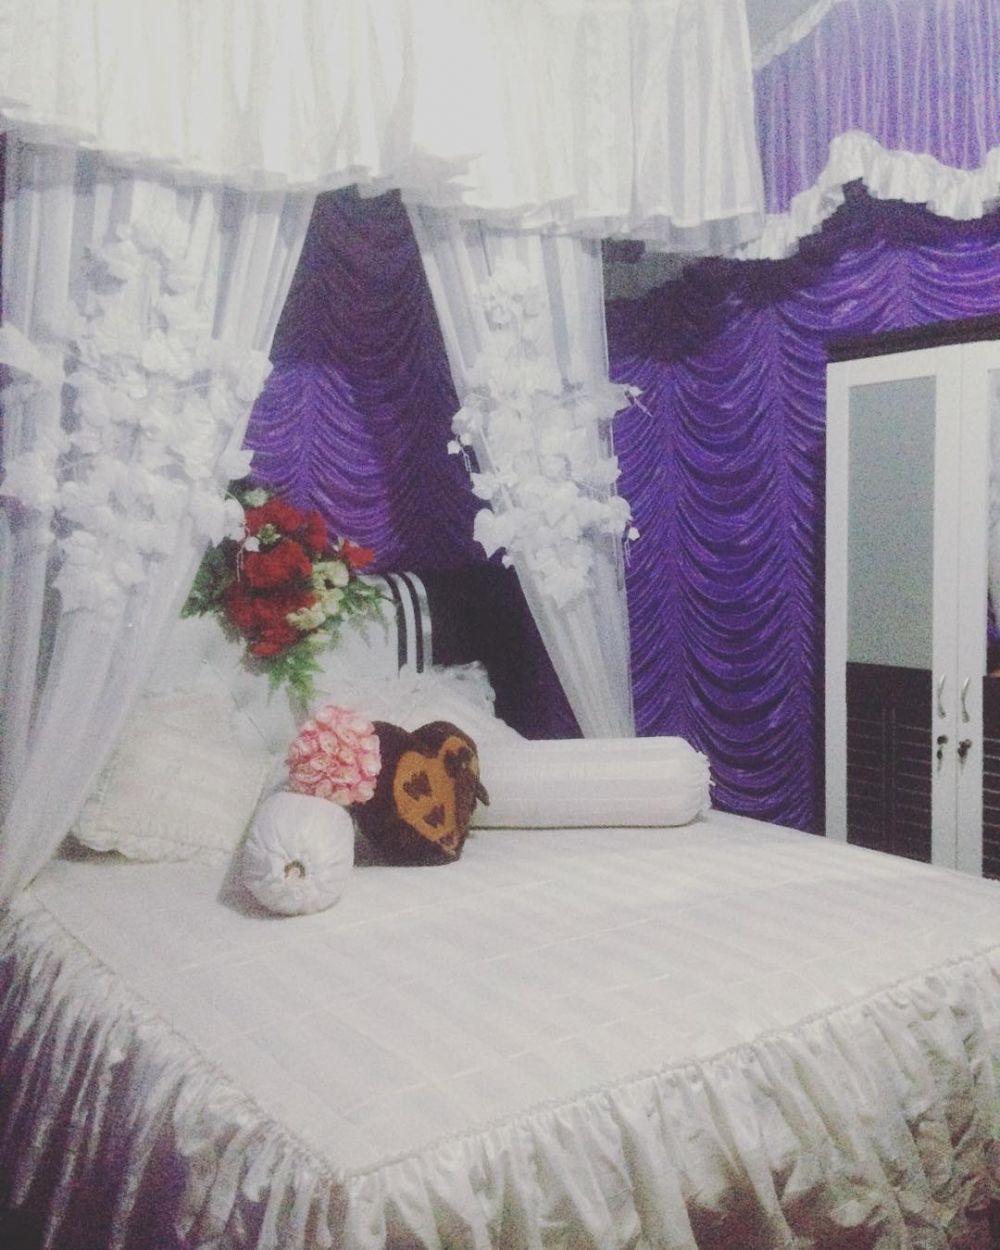  20  Desain  kamar pengantin simpel dan romantis bikin  makin  